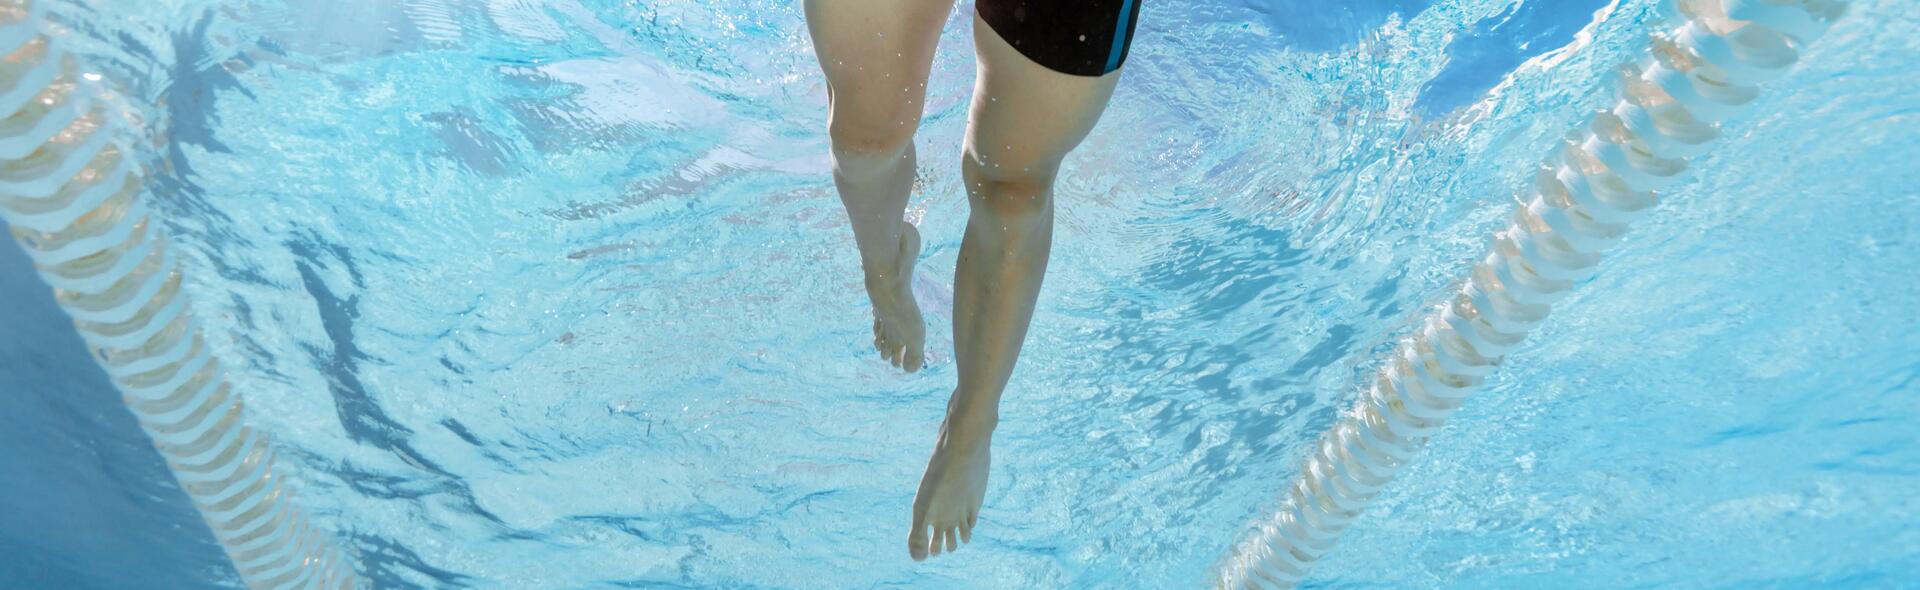 Améliorer ses battements de jambes en natation